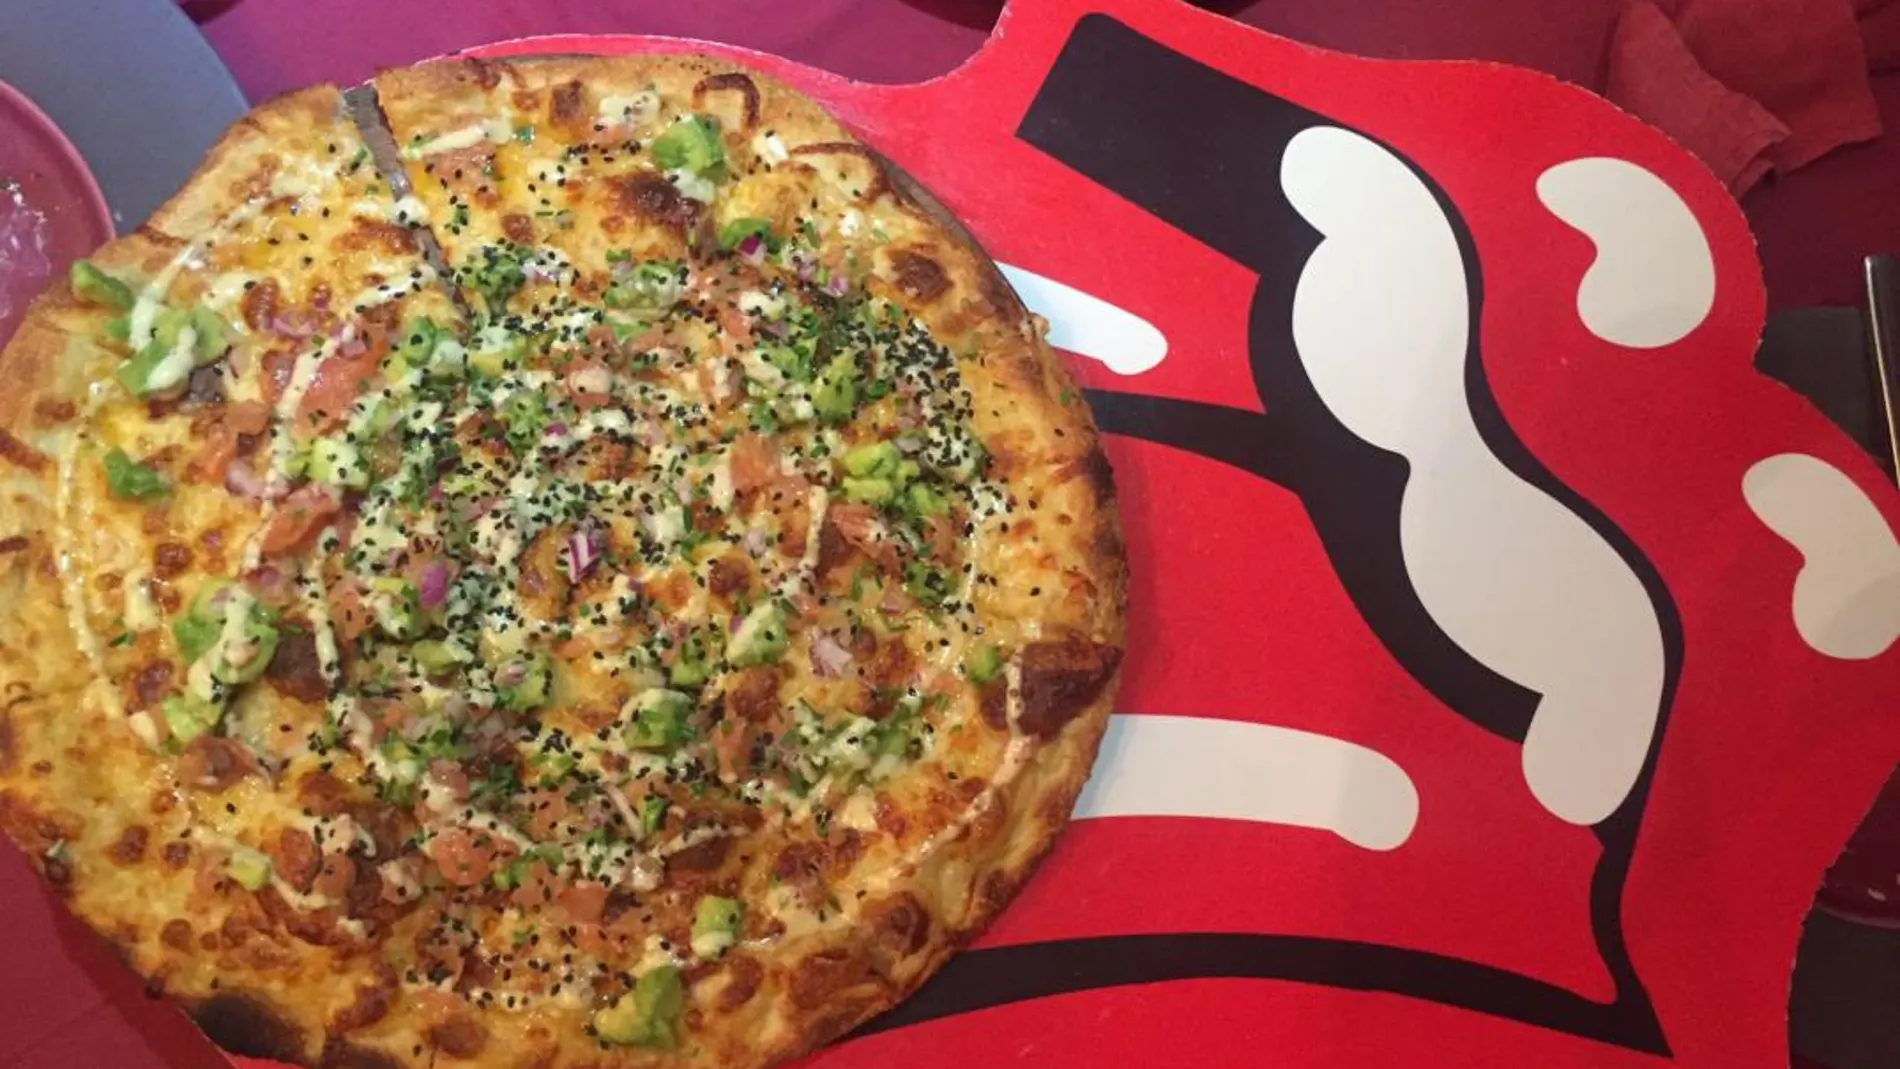 Pizza Rolling Stones la más reverenciada. Se verifican todos los augurios gustativos a golpe de “Satisfaction”.